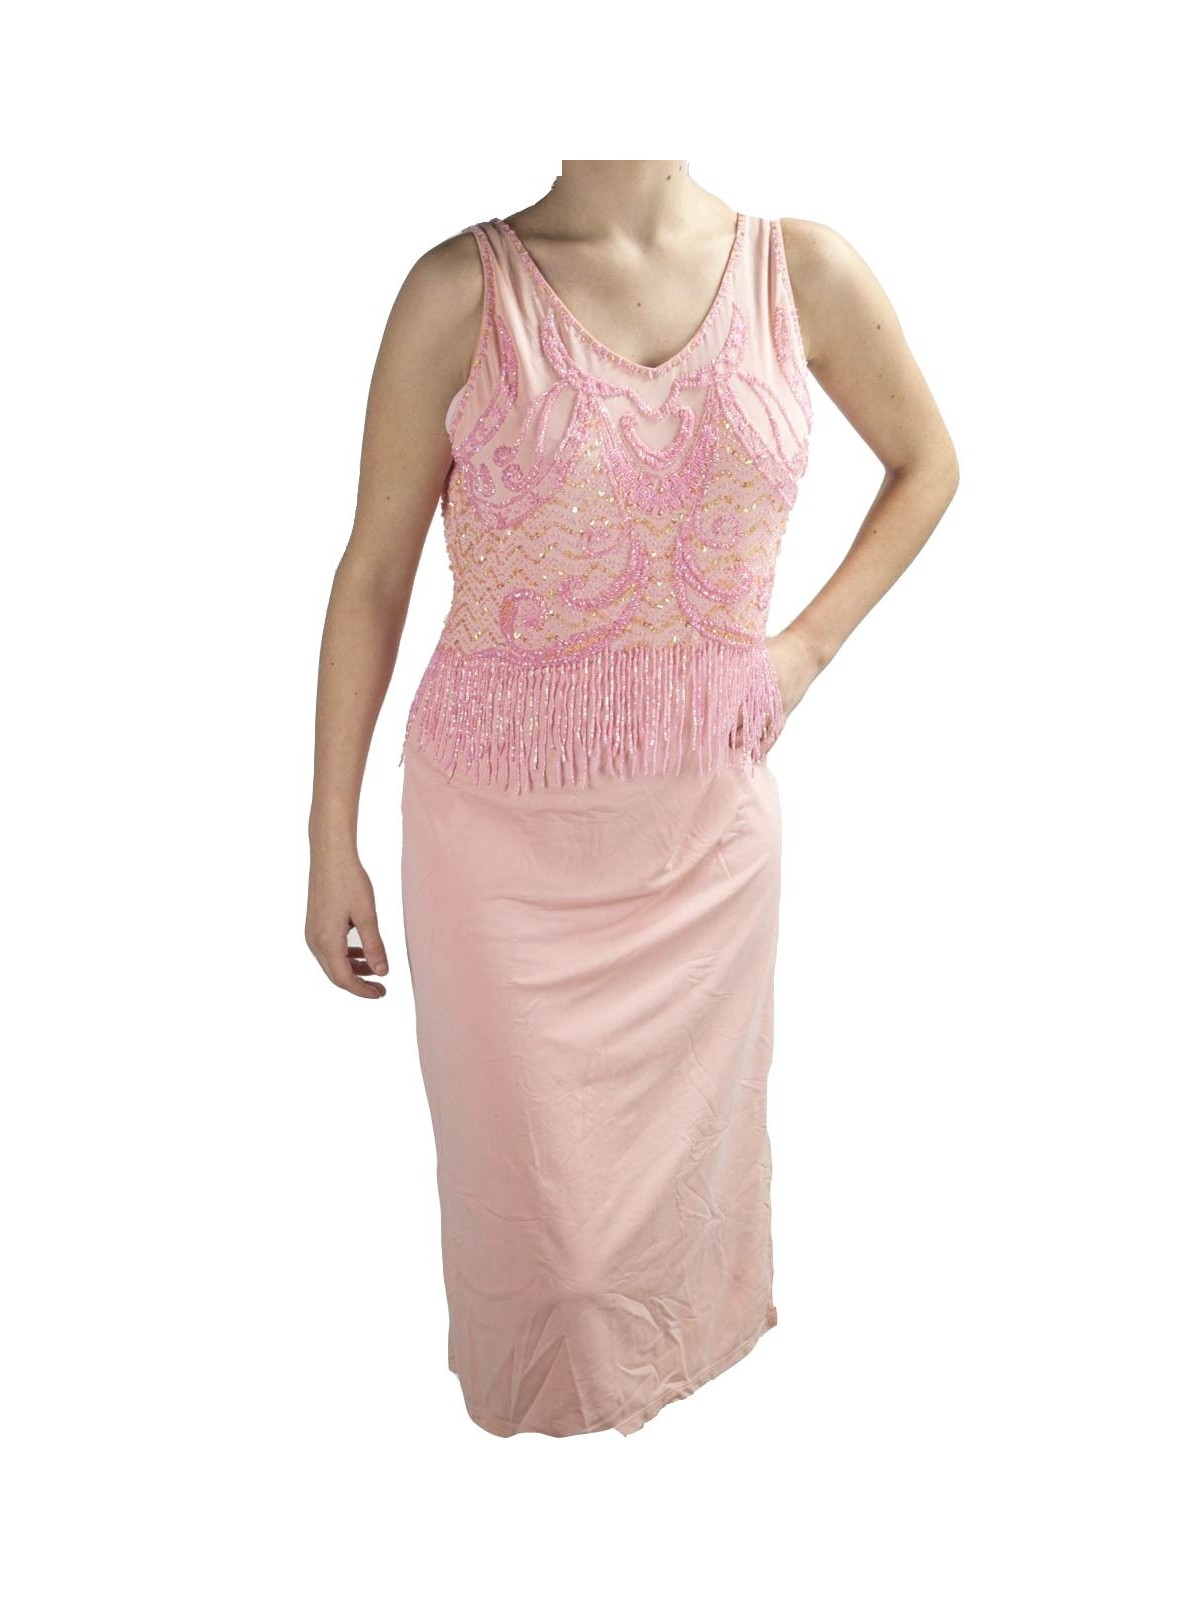 Abito Donna Tubino Elegante XL Rosa - Corpetto Perline Strass Charleston